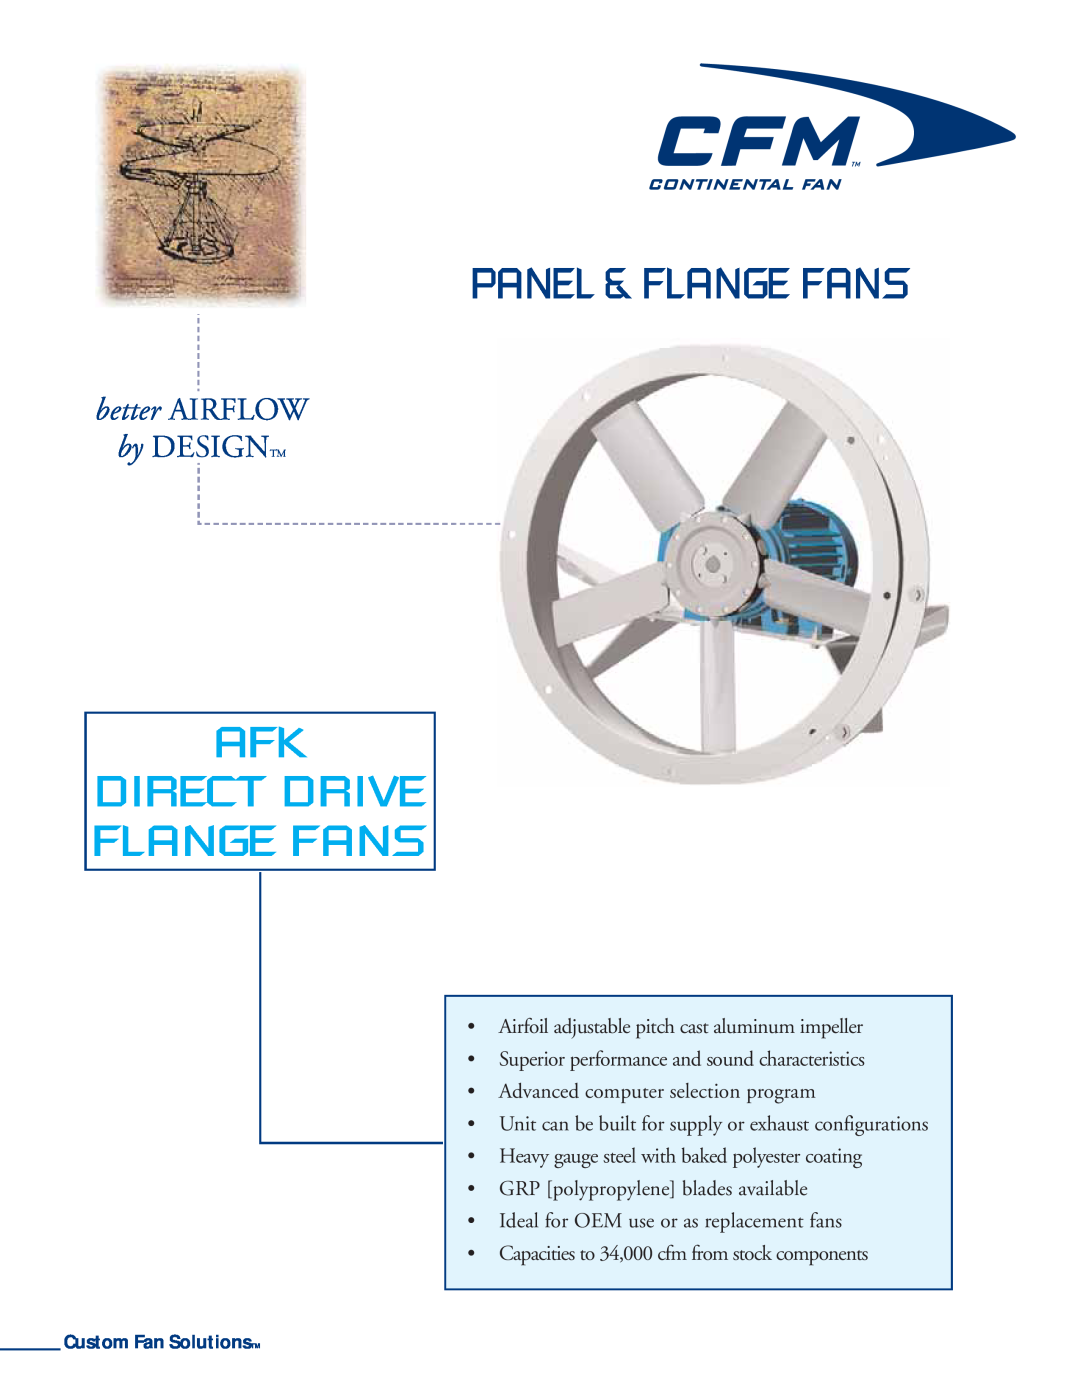 CFM AFK-42, AFK-30, AFK-36, AFK-27 manual Panel & Flange Fans, Afk Direct Drive Flange Fans, better AIRFLOW, by DESIGNTM 